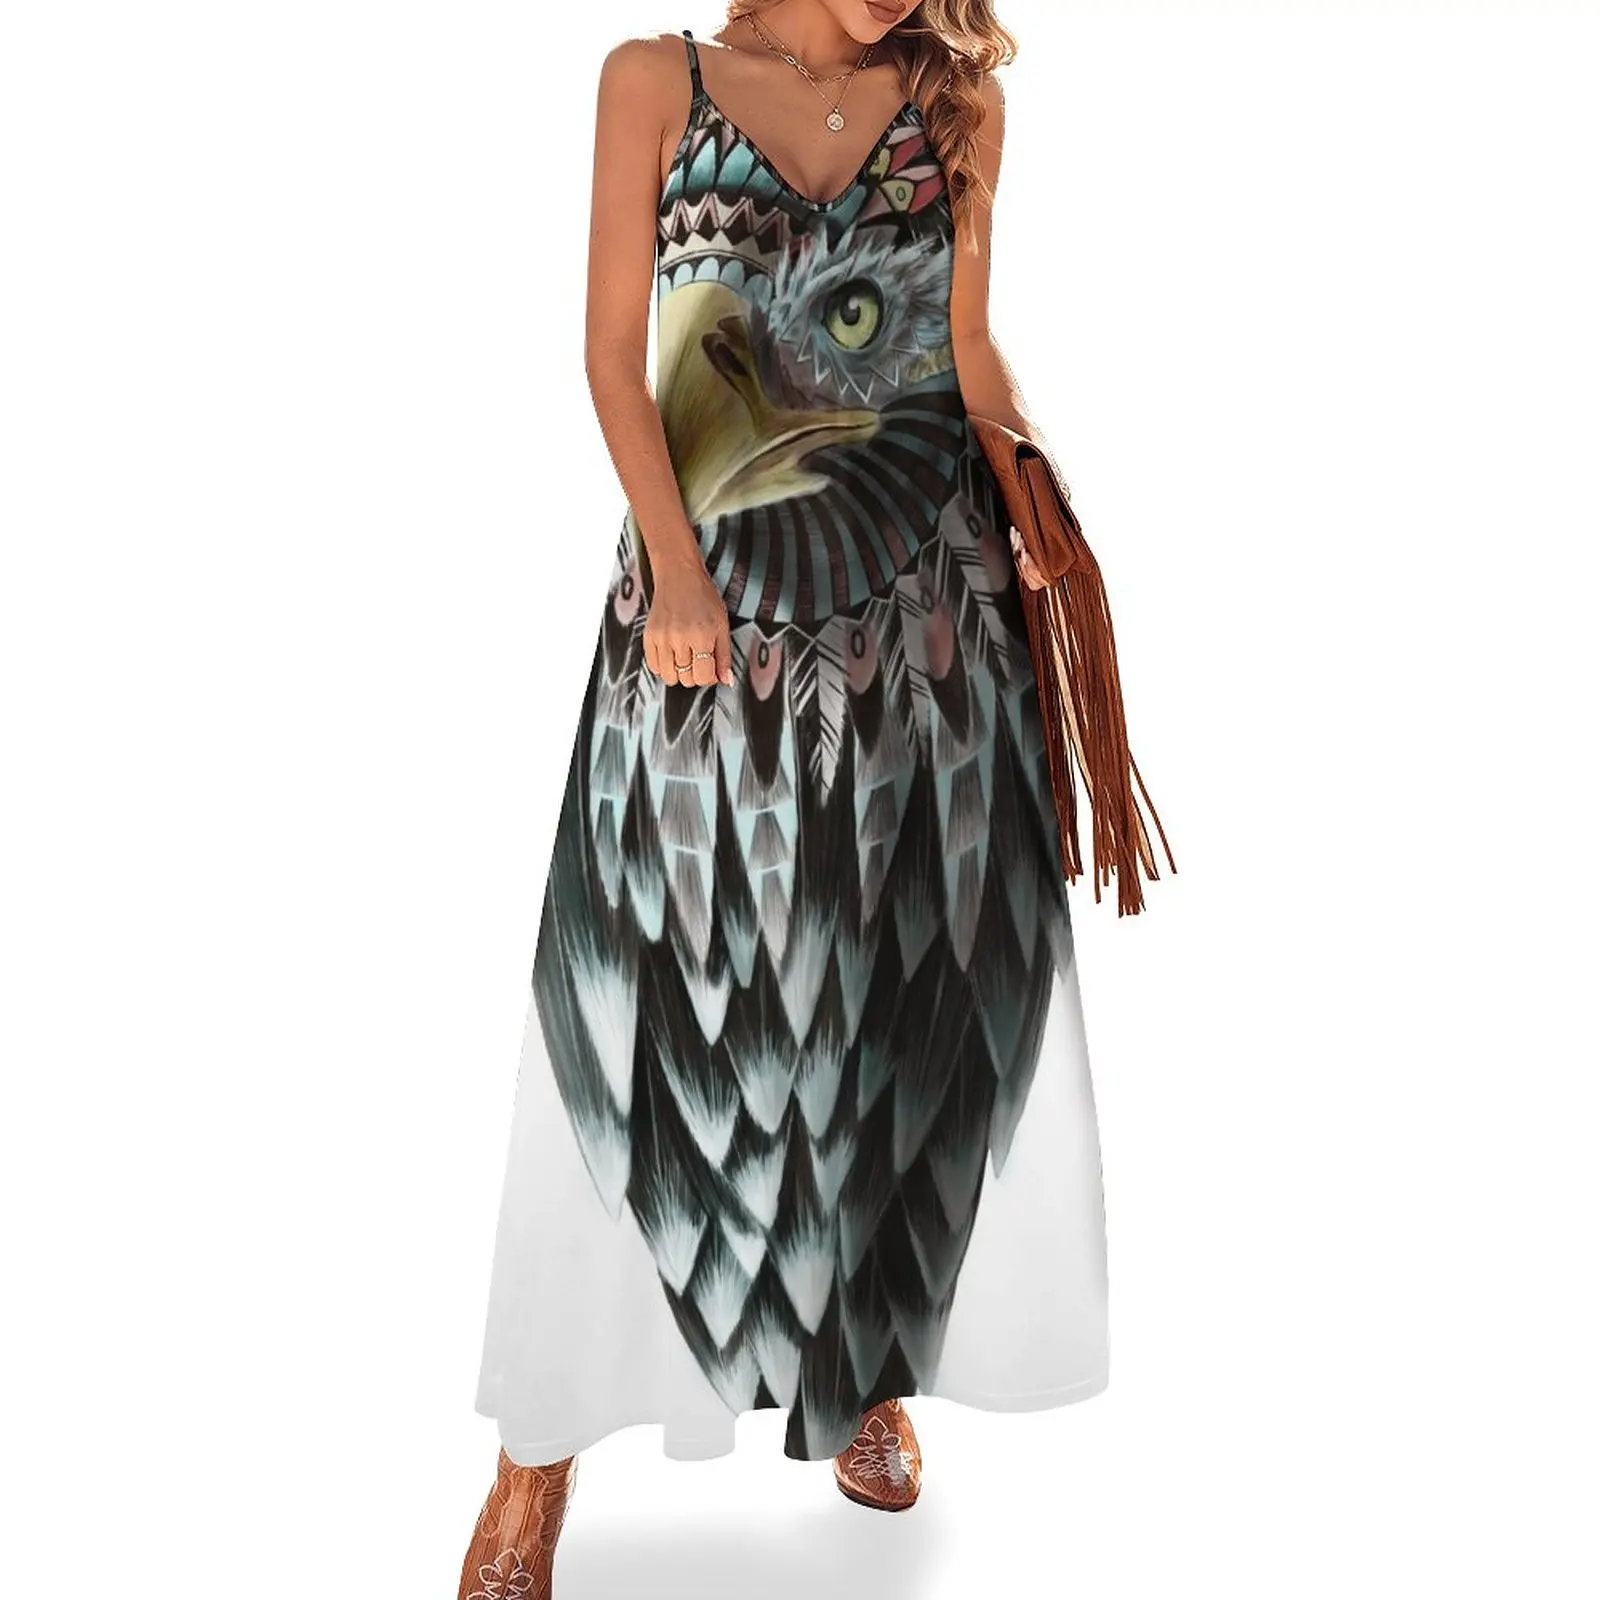 New Mythical Eagle Shaman Sleeveless Dress Womens dresses Party dresses for women dresses with long sleeves